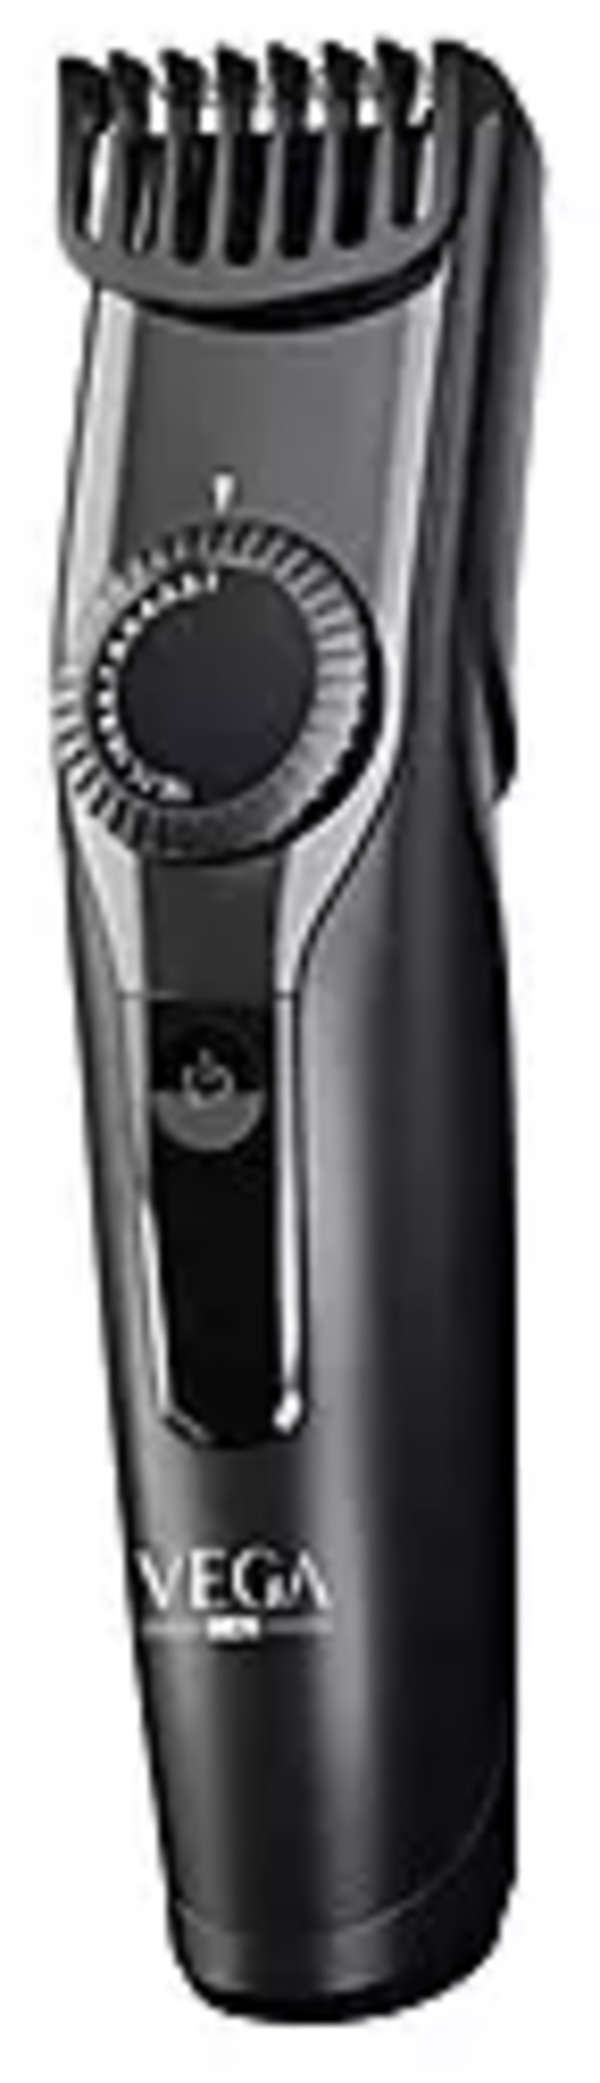 VEGA T-1 Beard trimmer - Cordless & USB Charging, 1N, Black, 220G